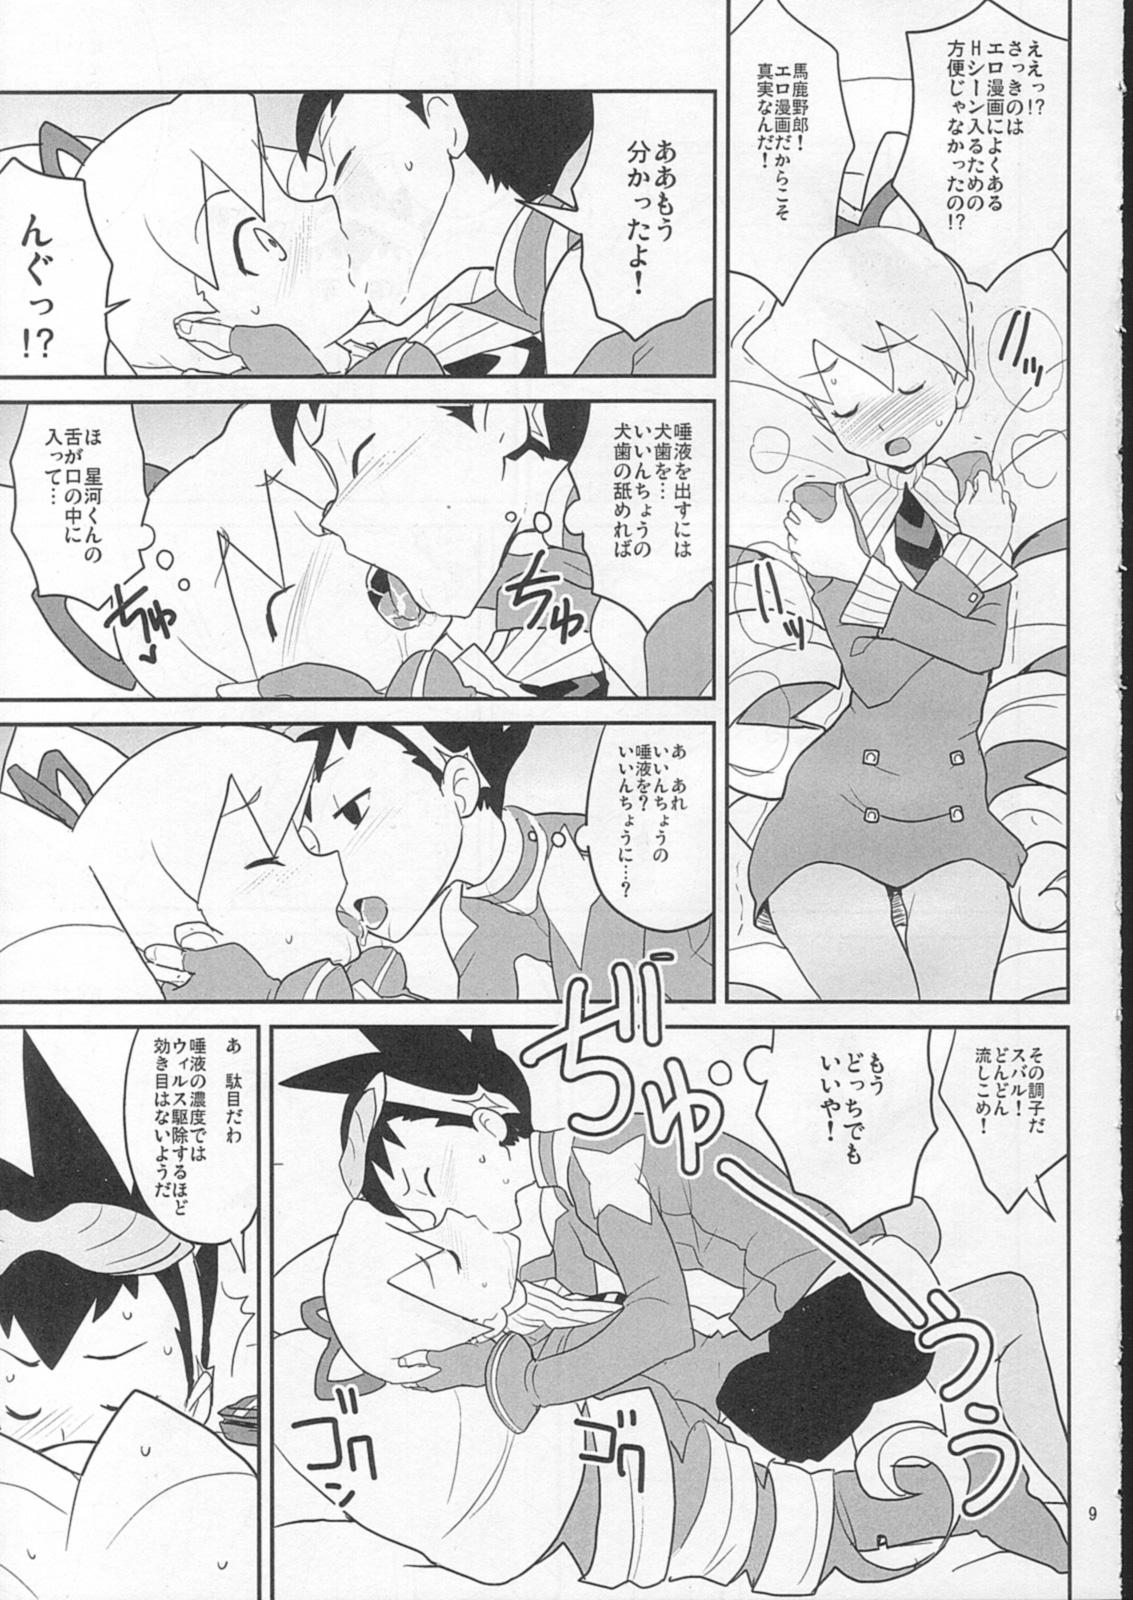 Leche Sukisuki Seiga-kun! - Mega man star force Step - Page 8